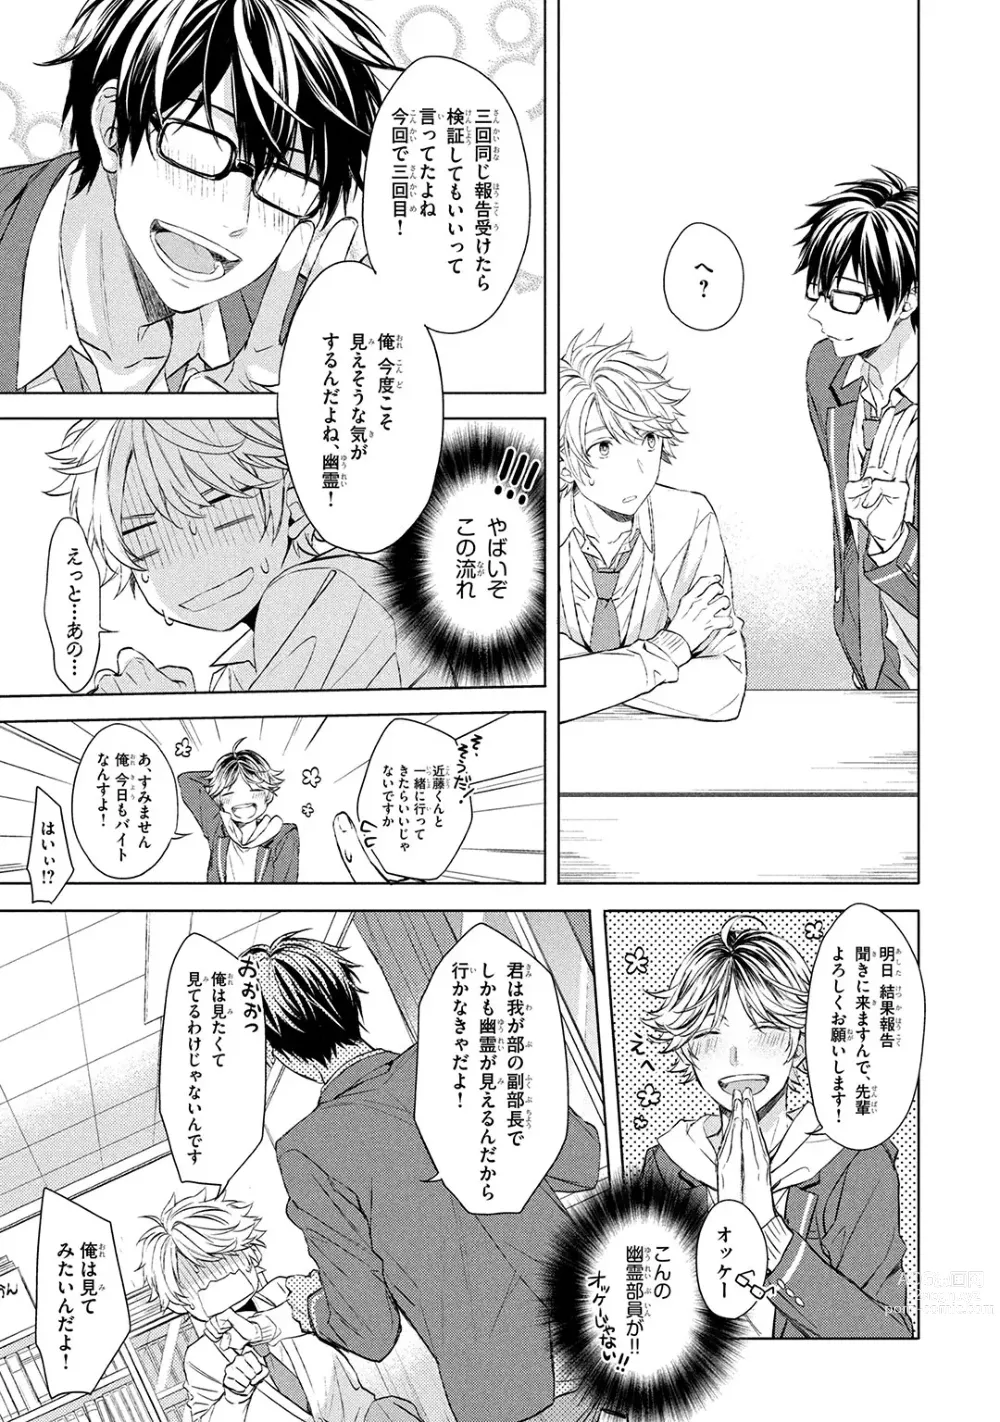 Page 9 of manga Ore dake ga Shitte iru